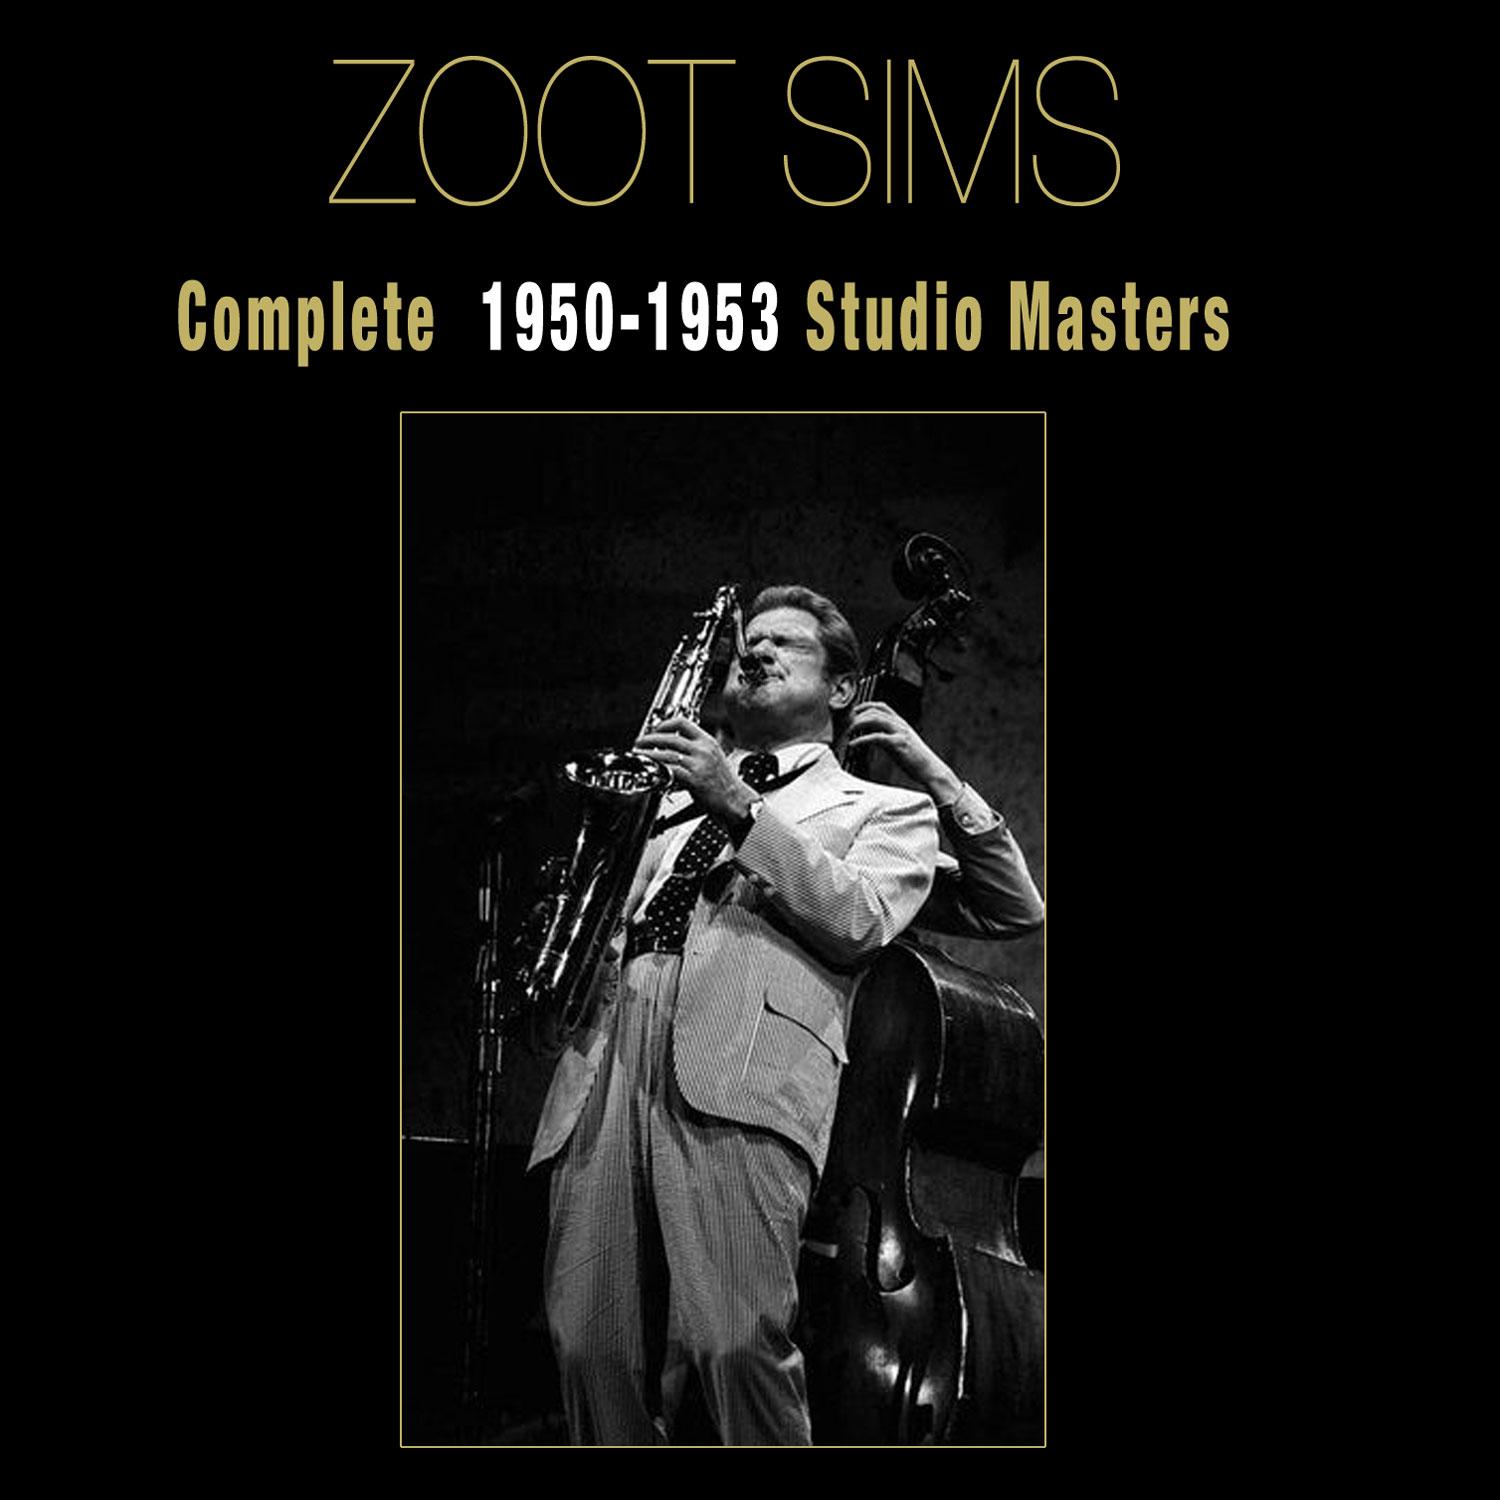 Complete 1950-1953 Studio Masters